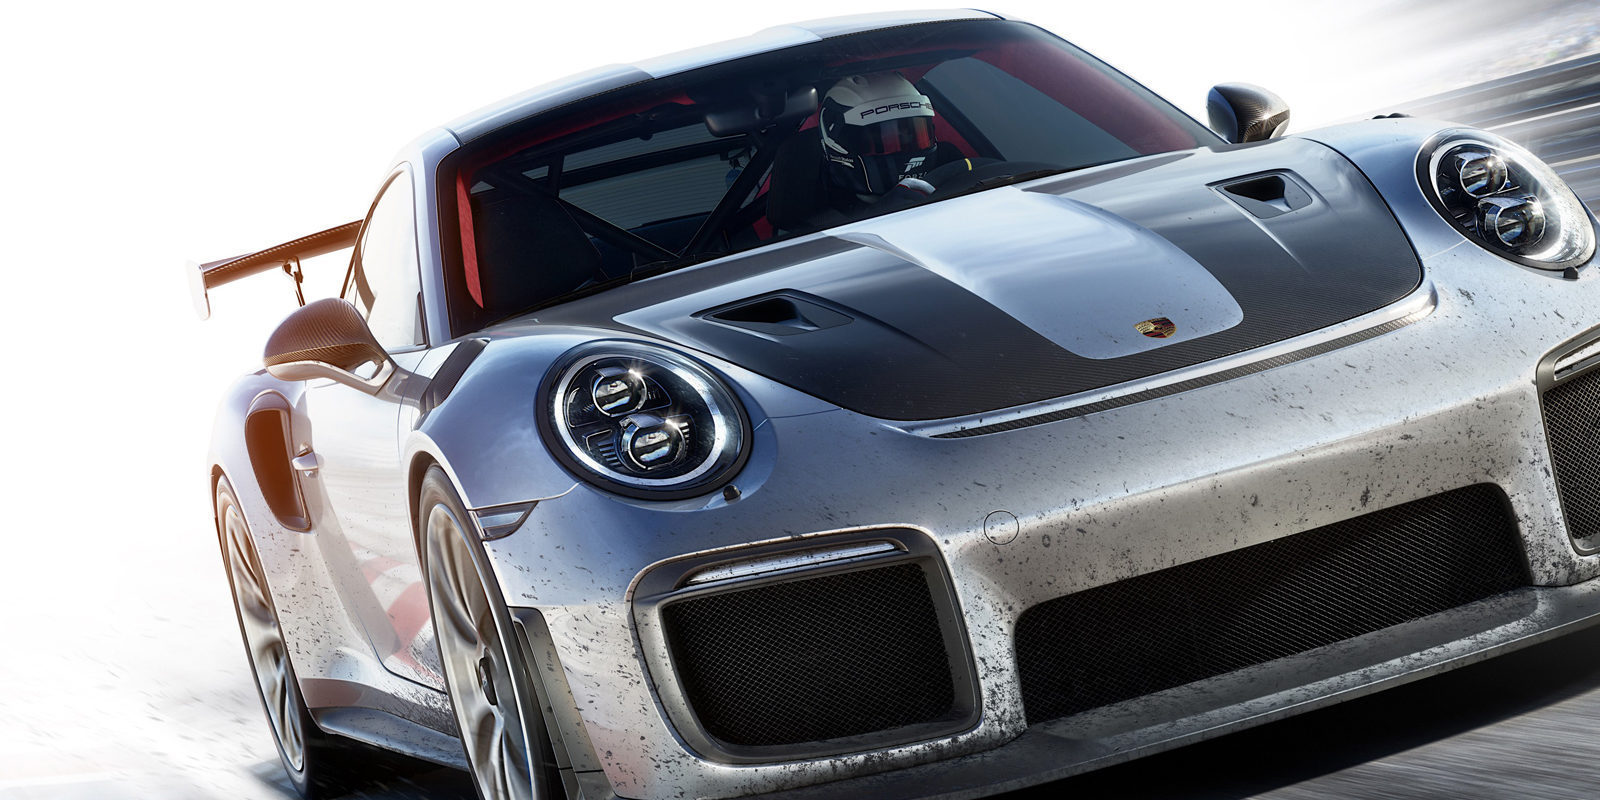 Impresiones finales 'Forza Motorsport 7', el título ideal para estrenar Xbox One X